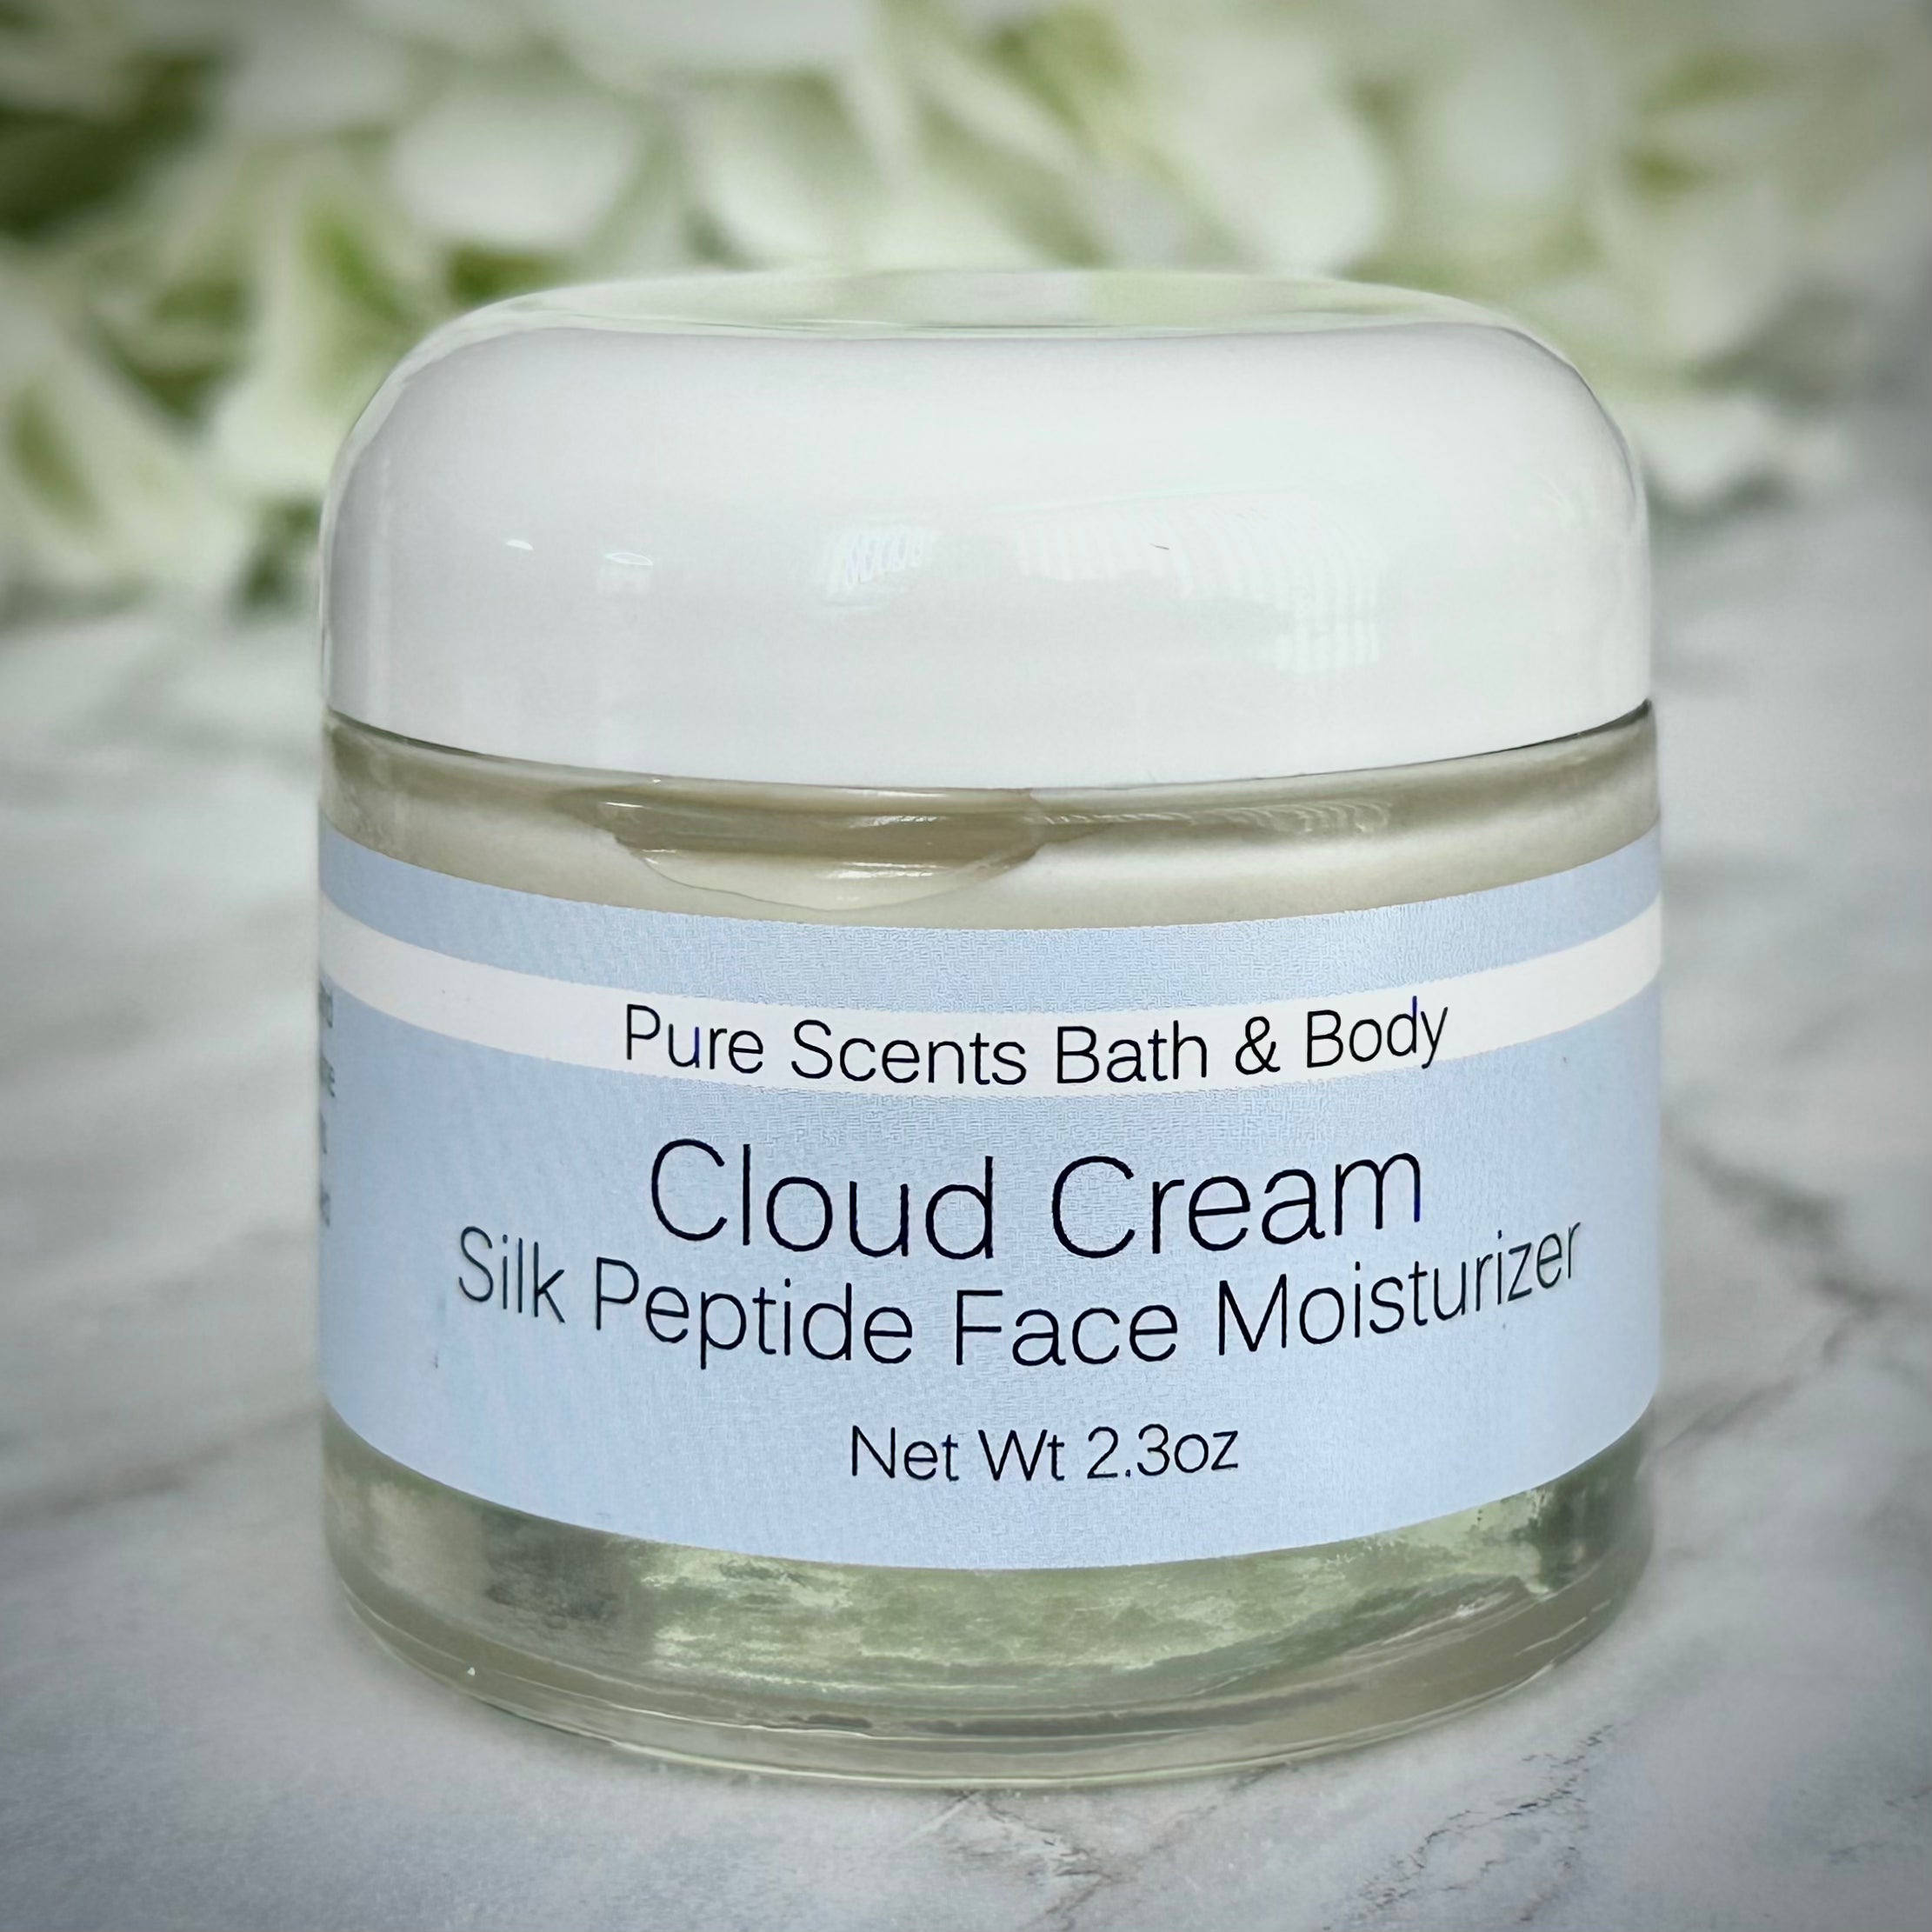 Cloud Cream Silk Peptide Face Moisturizer